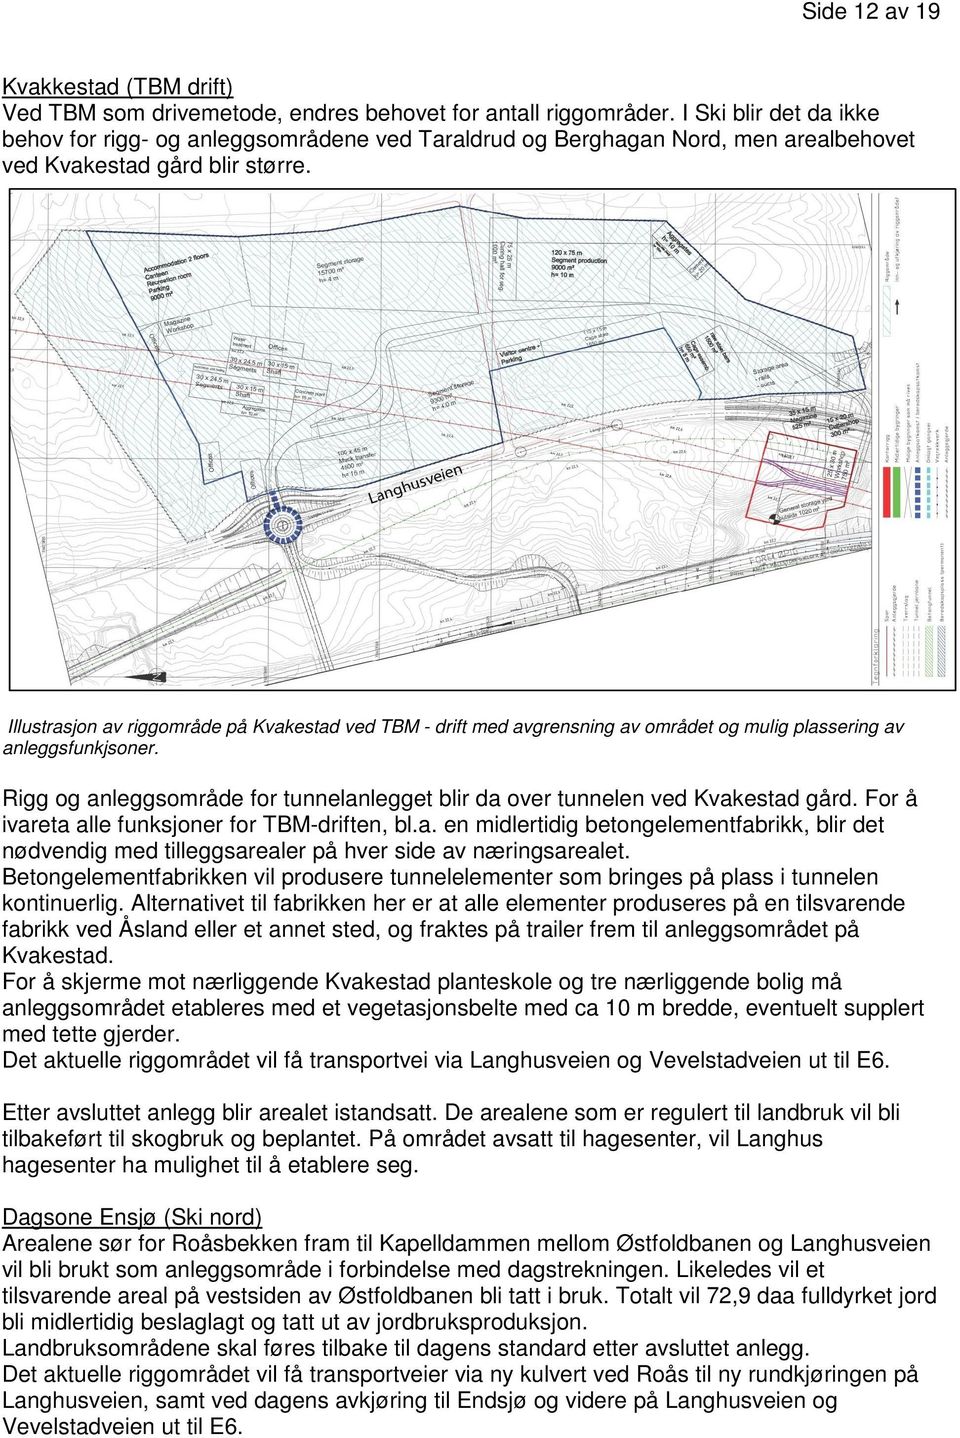 Illustrasjon av riggområde på Kvakestad ved TBM - drift med avgrensning av området og mulig plassering av anleggsfunkjsoner.